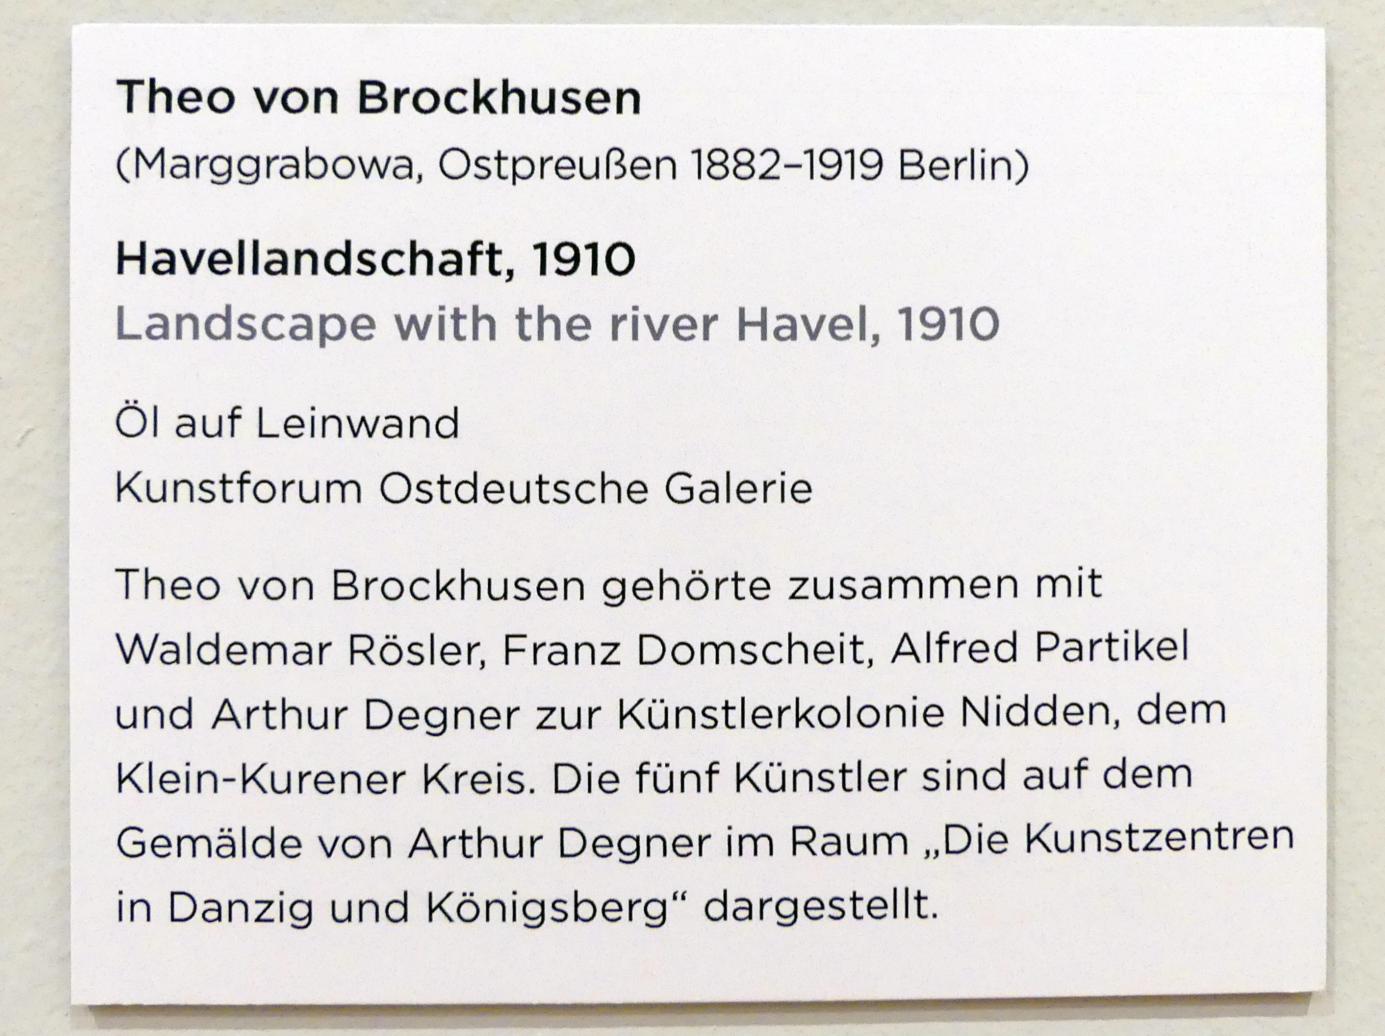 Theo von Brockhusen (1910), Havellandschaft, Regensburg, Ostdeutsche Galerie, Saal 6, 1910, Bild 2/2